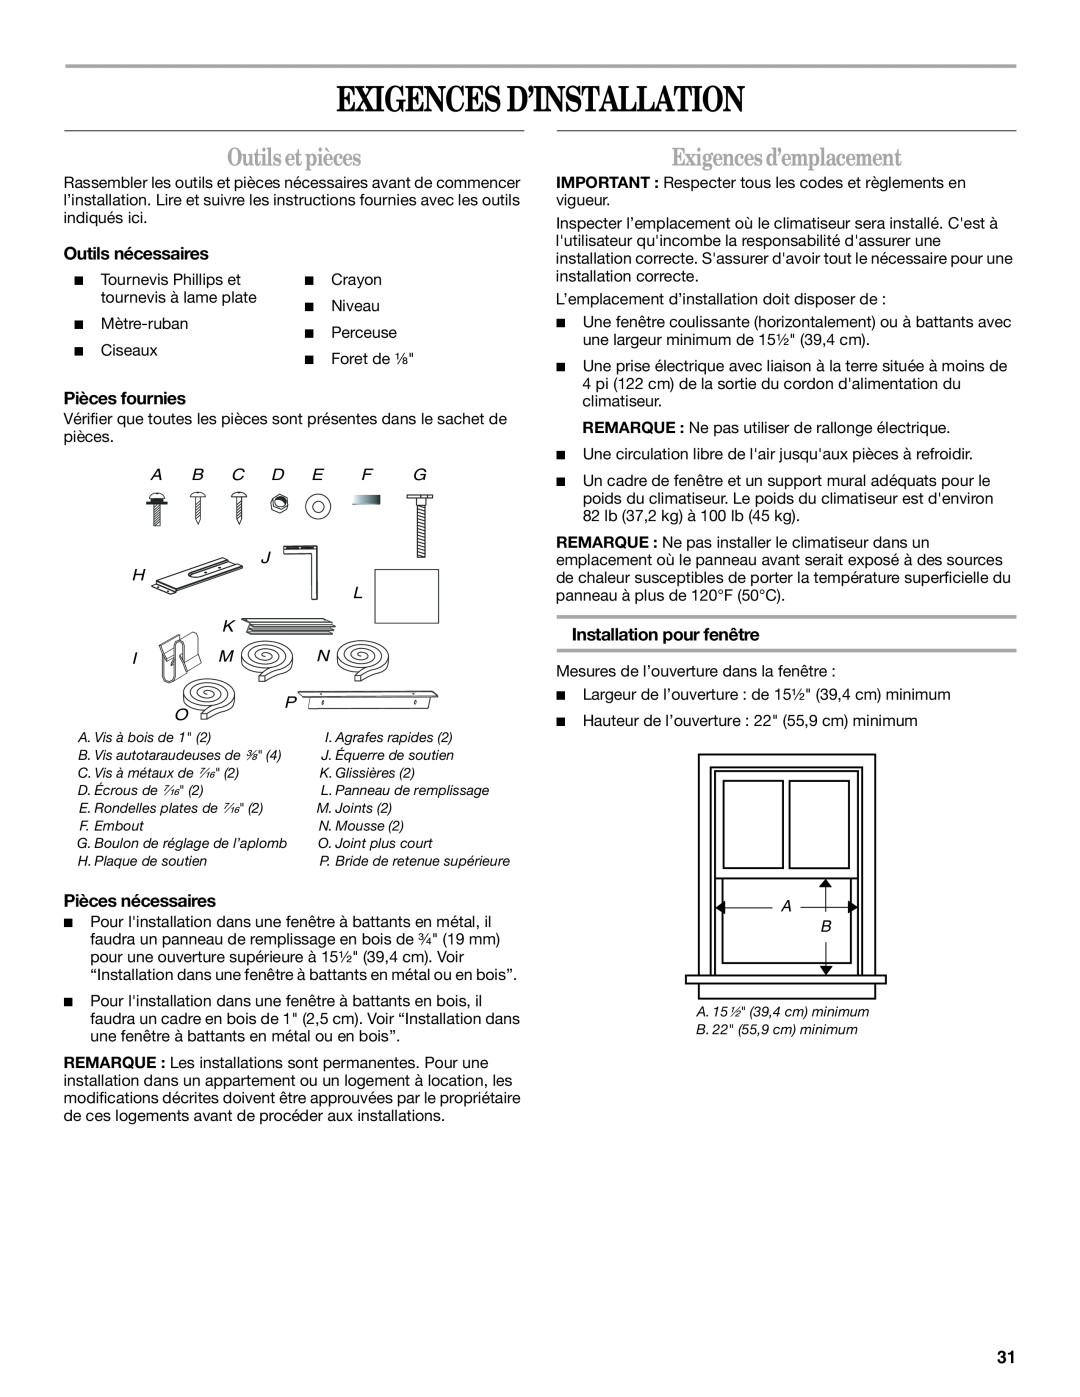 Whirlpool ACS088PR0 manual Exigences D’Installation, Outils etpièces, Exigences d’emplacement, Outils nécessaires 